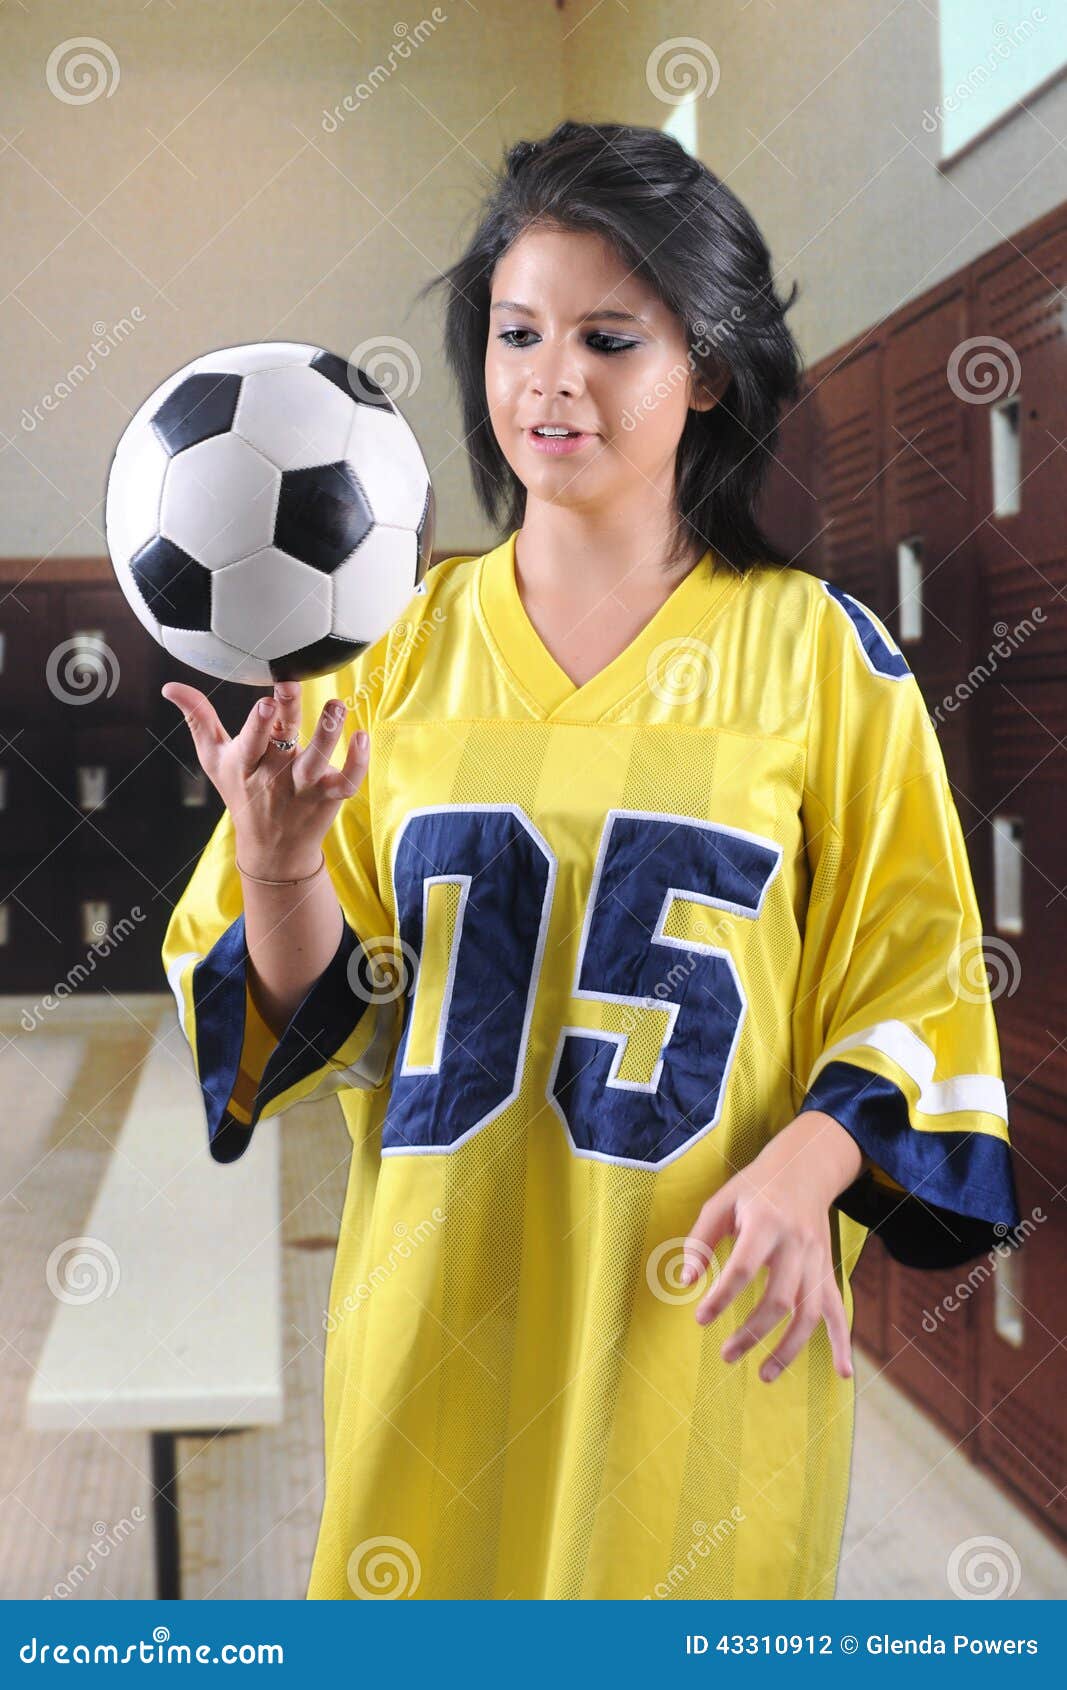 oversize soccer jersey